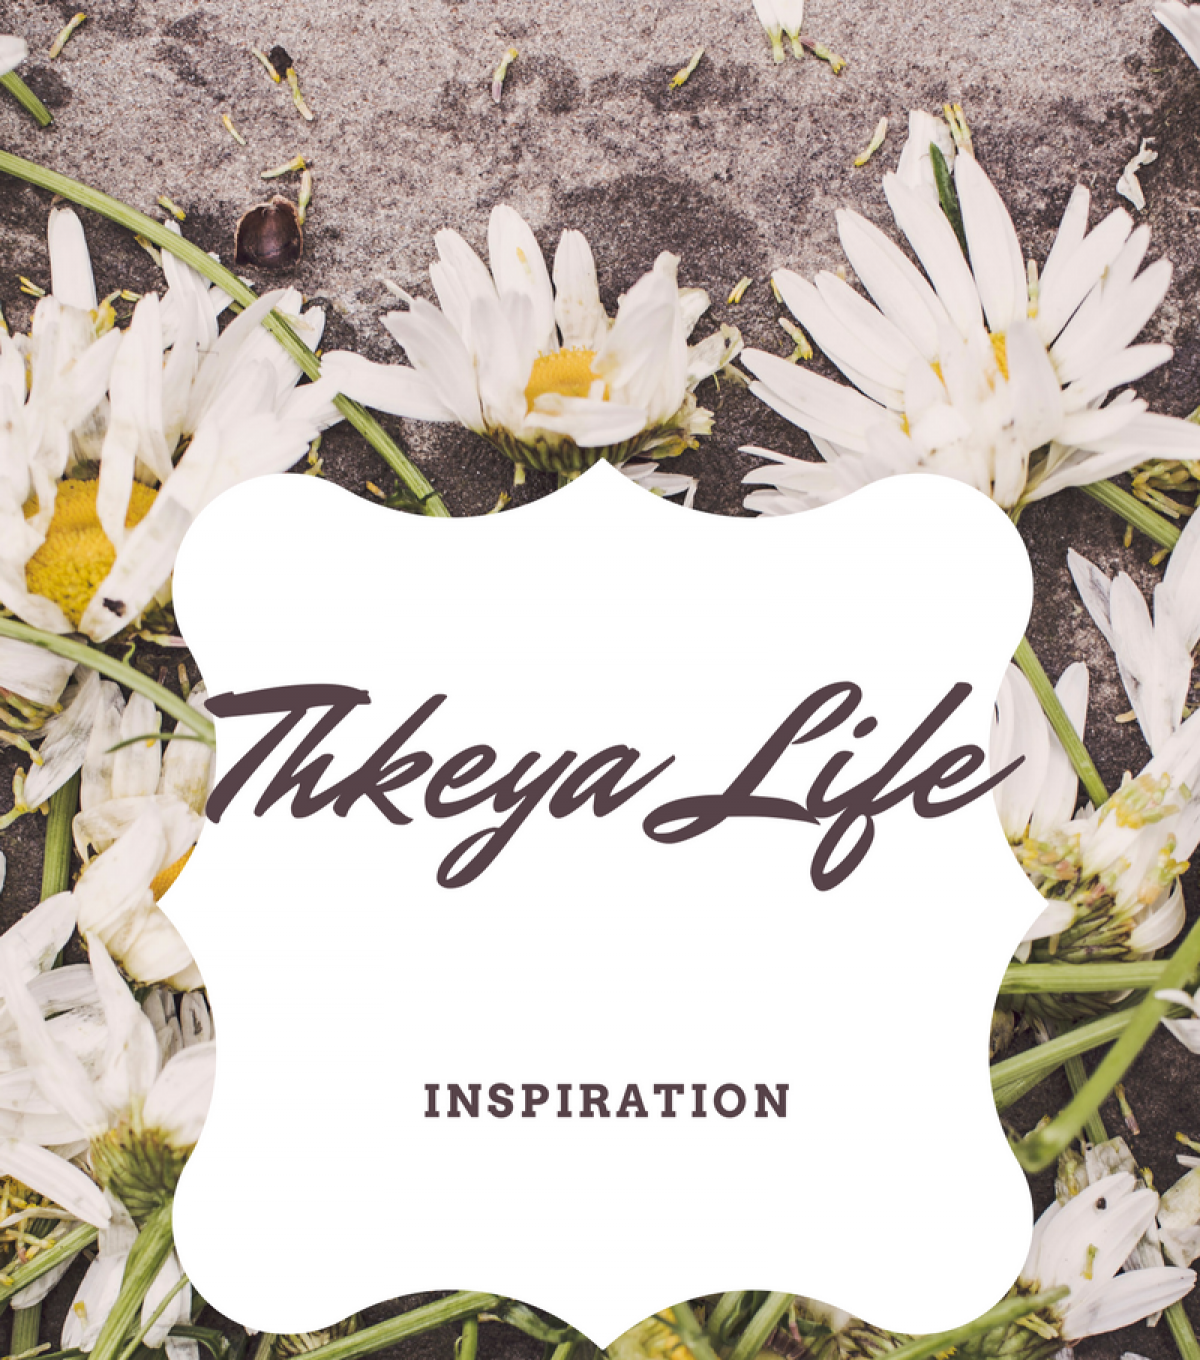 Thkeya's Reflections on Life